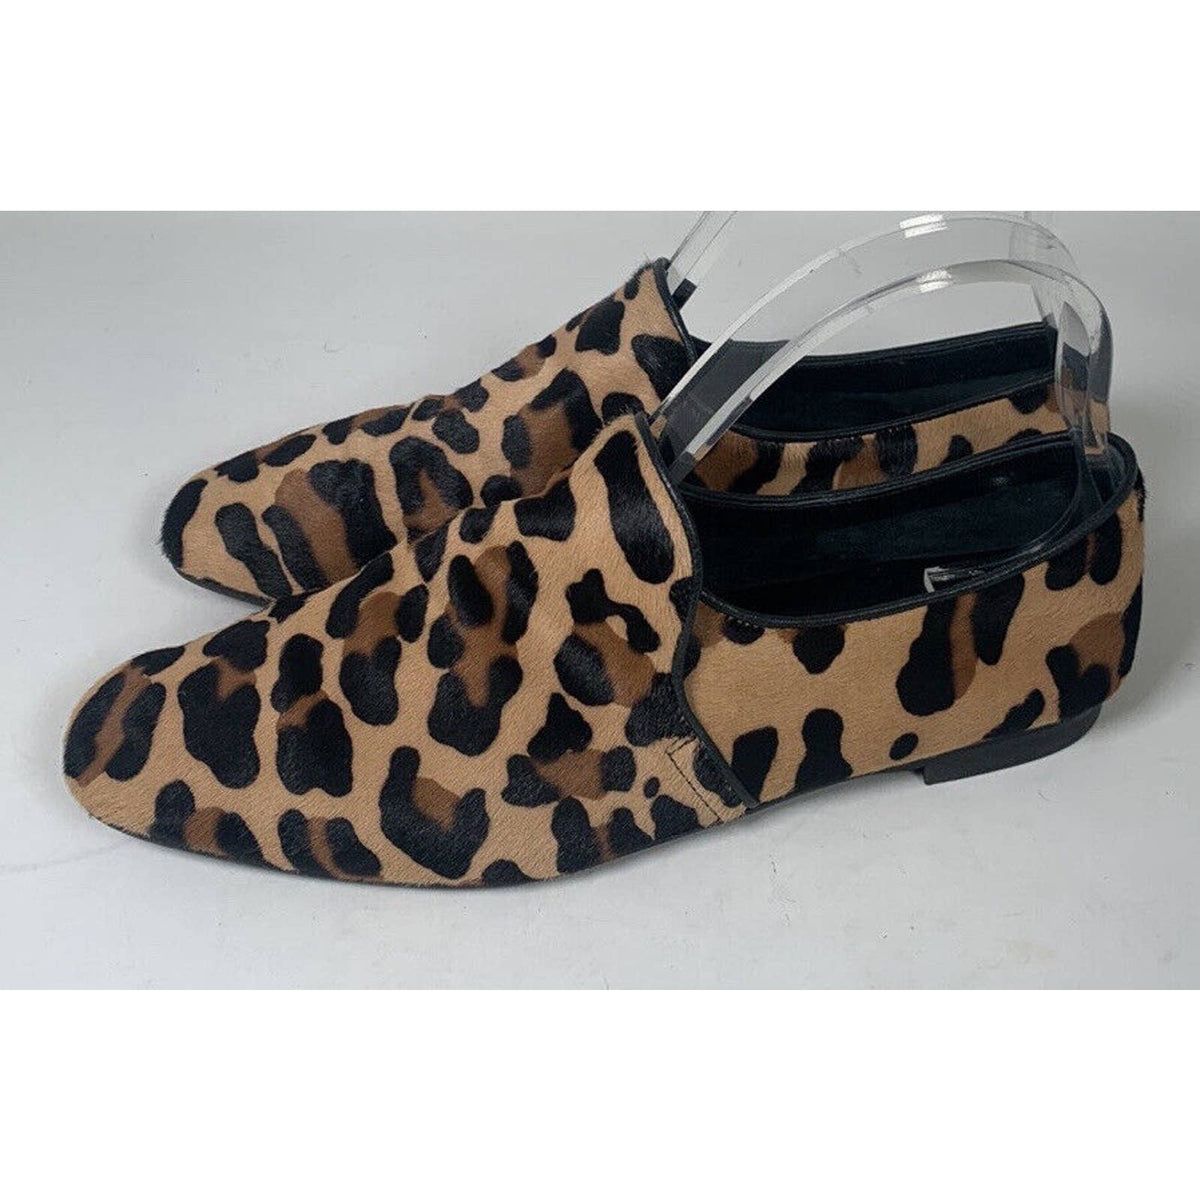 Aquatalia Leopard Calf Hair Ballet Flats Sz.10.5